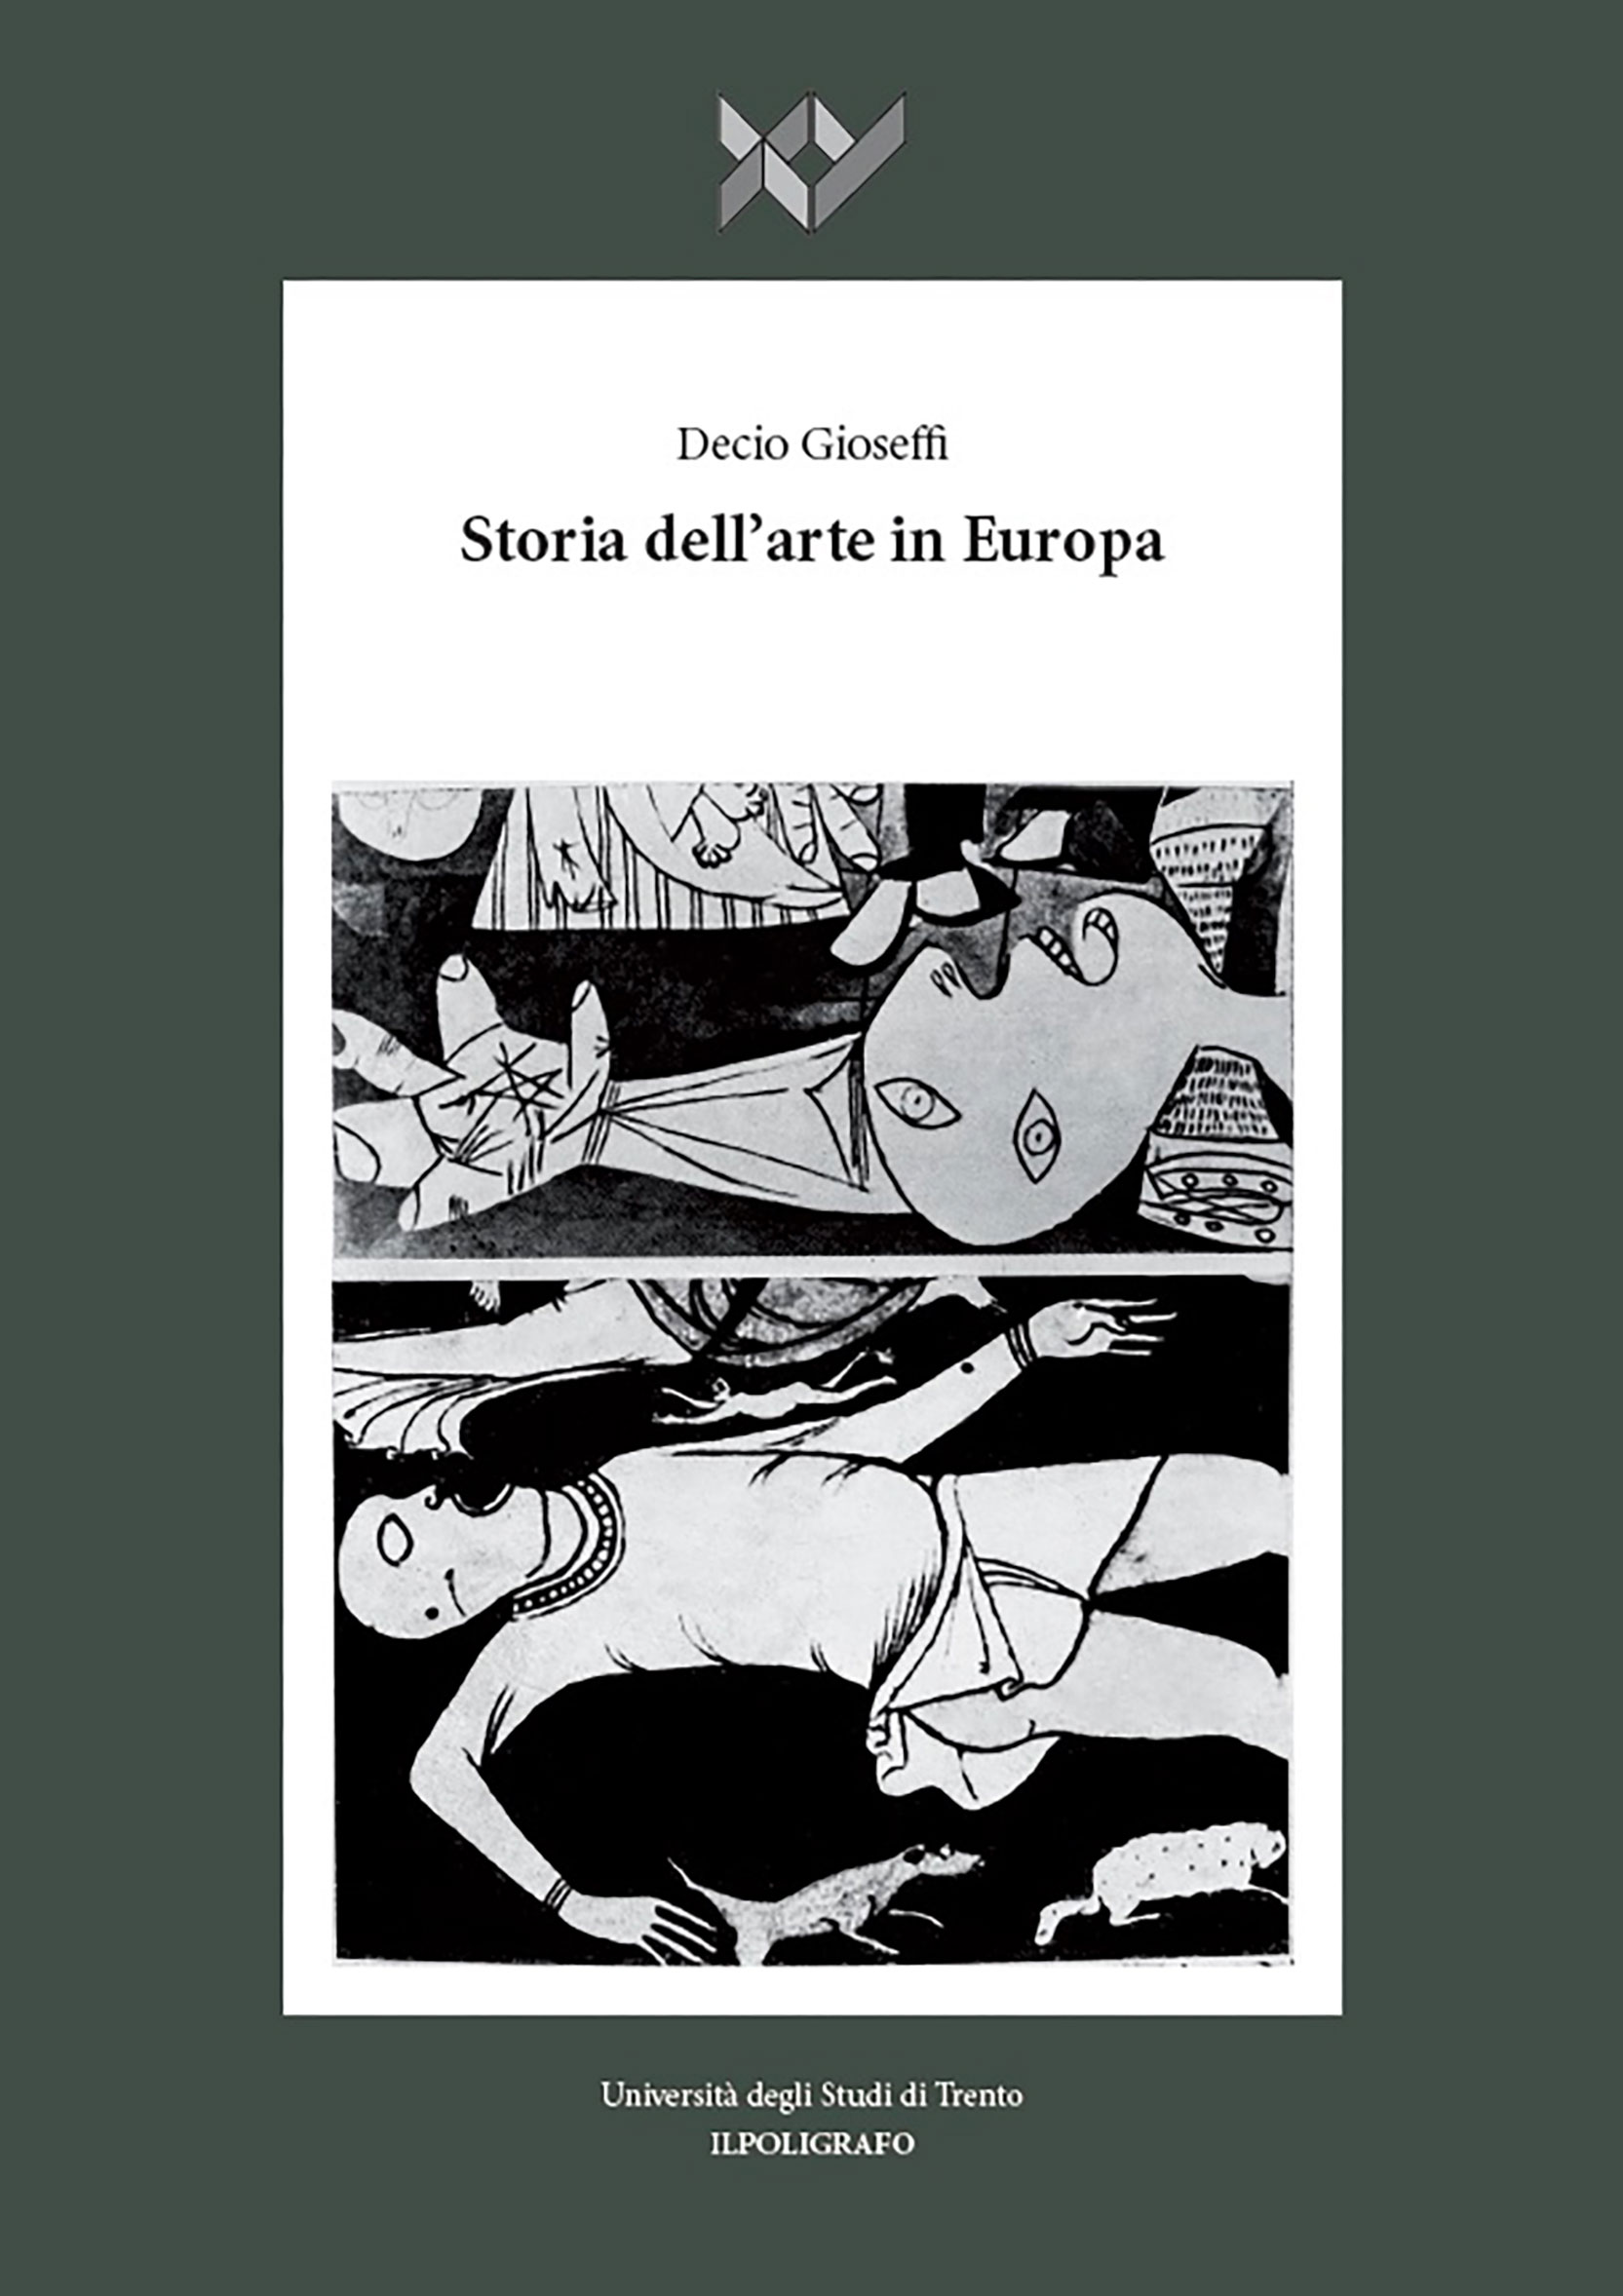 Presentazione del libro "Storia dell’arte in Europa" di Decio Gioseffi